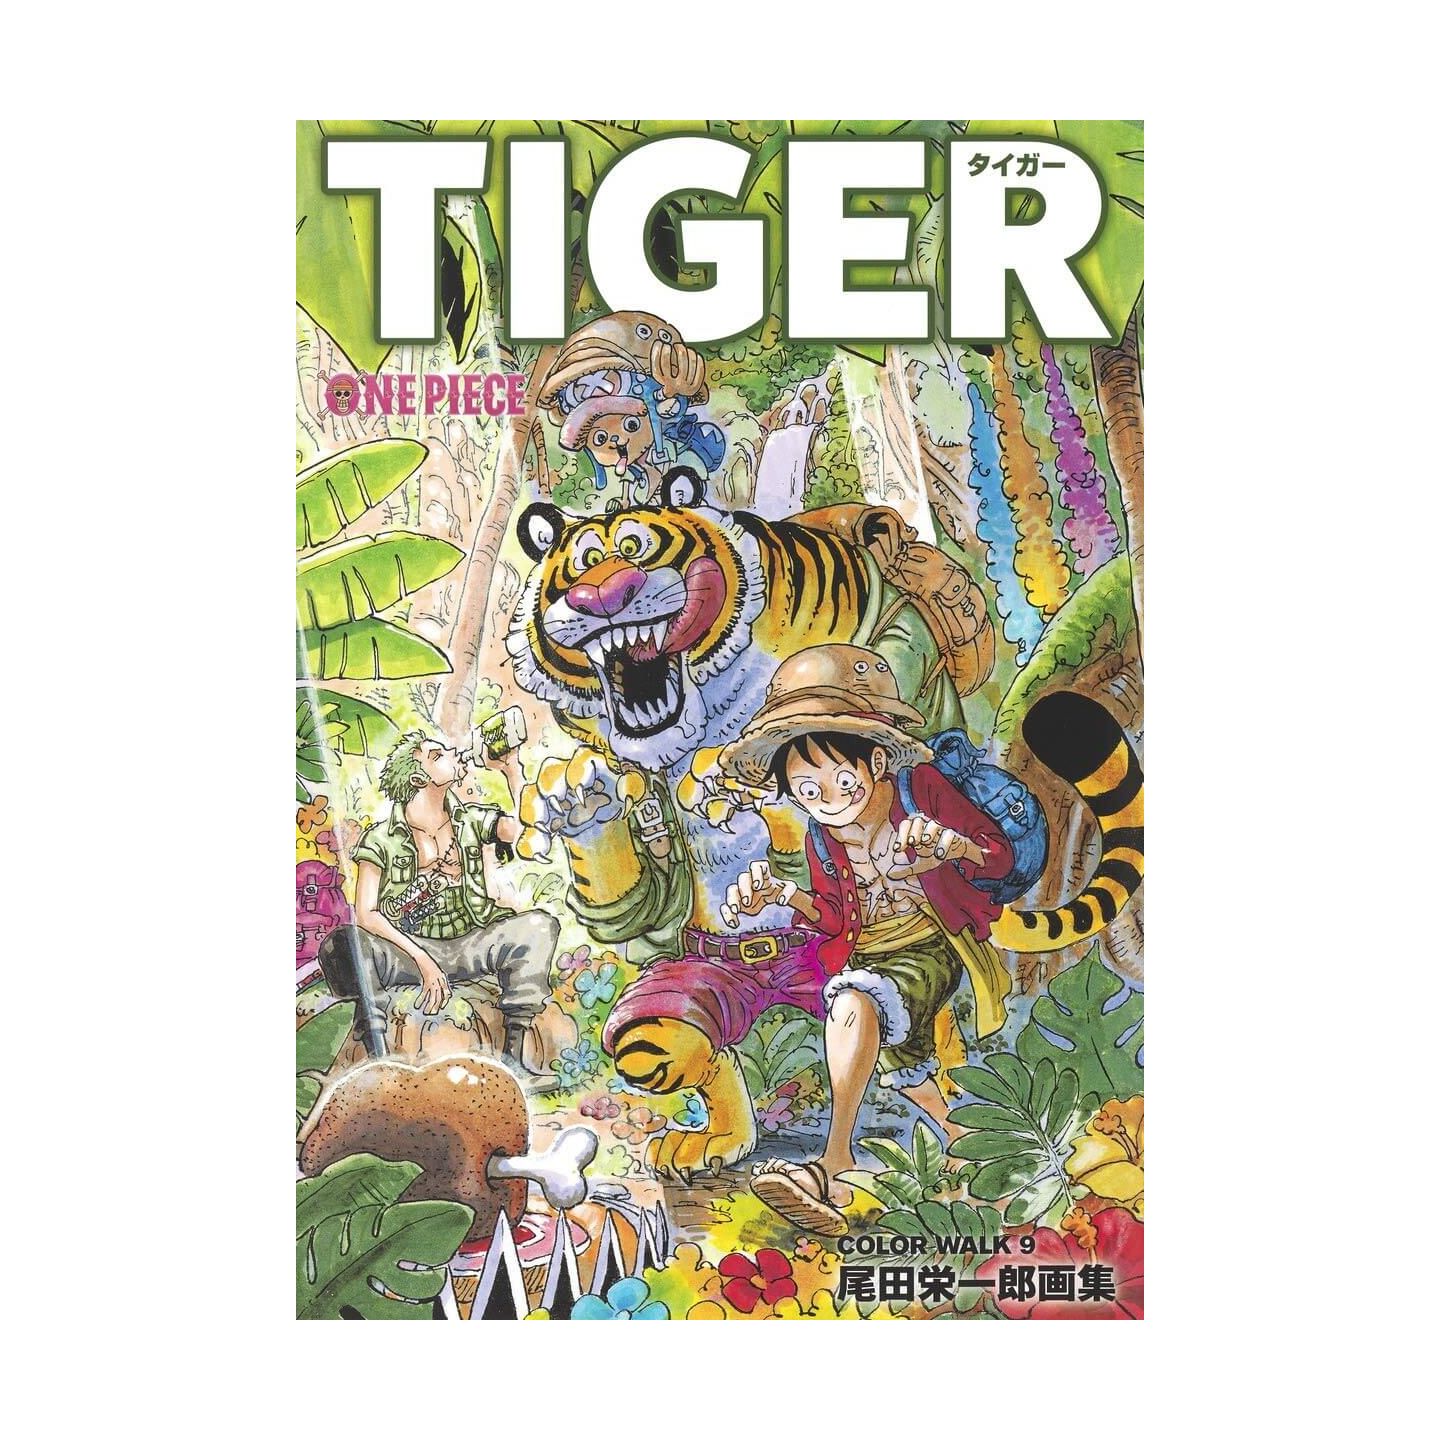 Onepieceイラスト集 Colorwalk 9 Tiger 愛蔵版コミックス